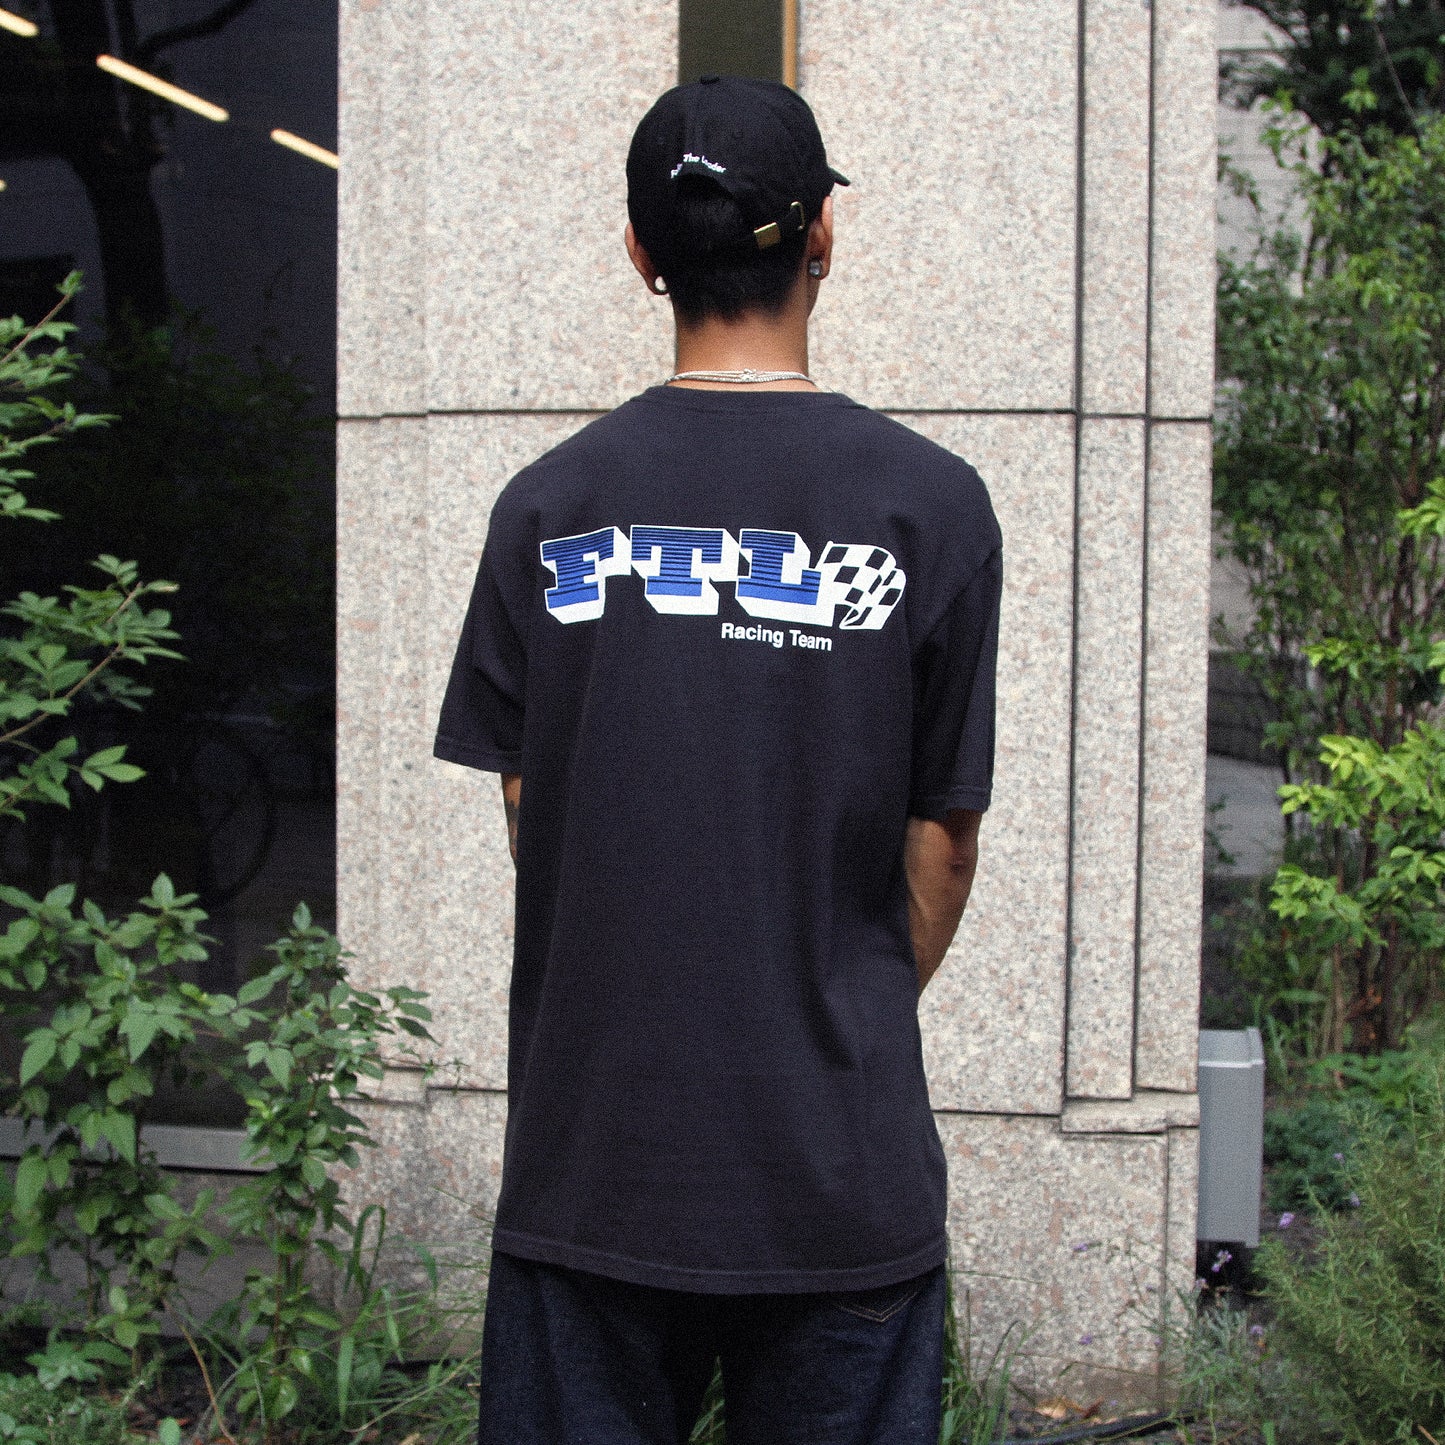 FTL - E30 DTM T-Shirt/Black